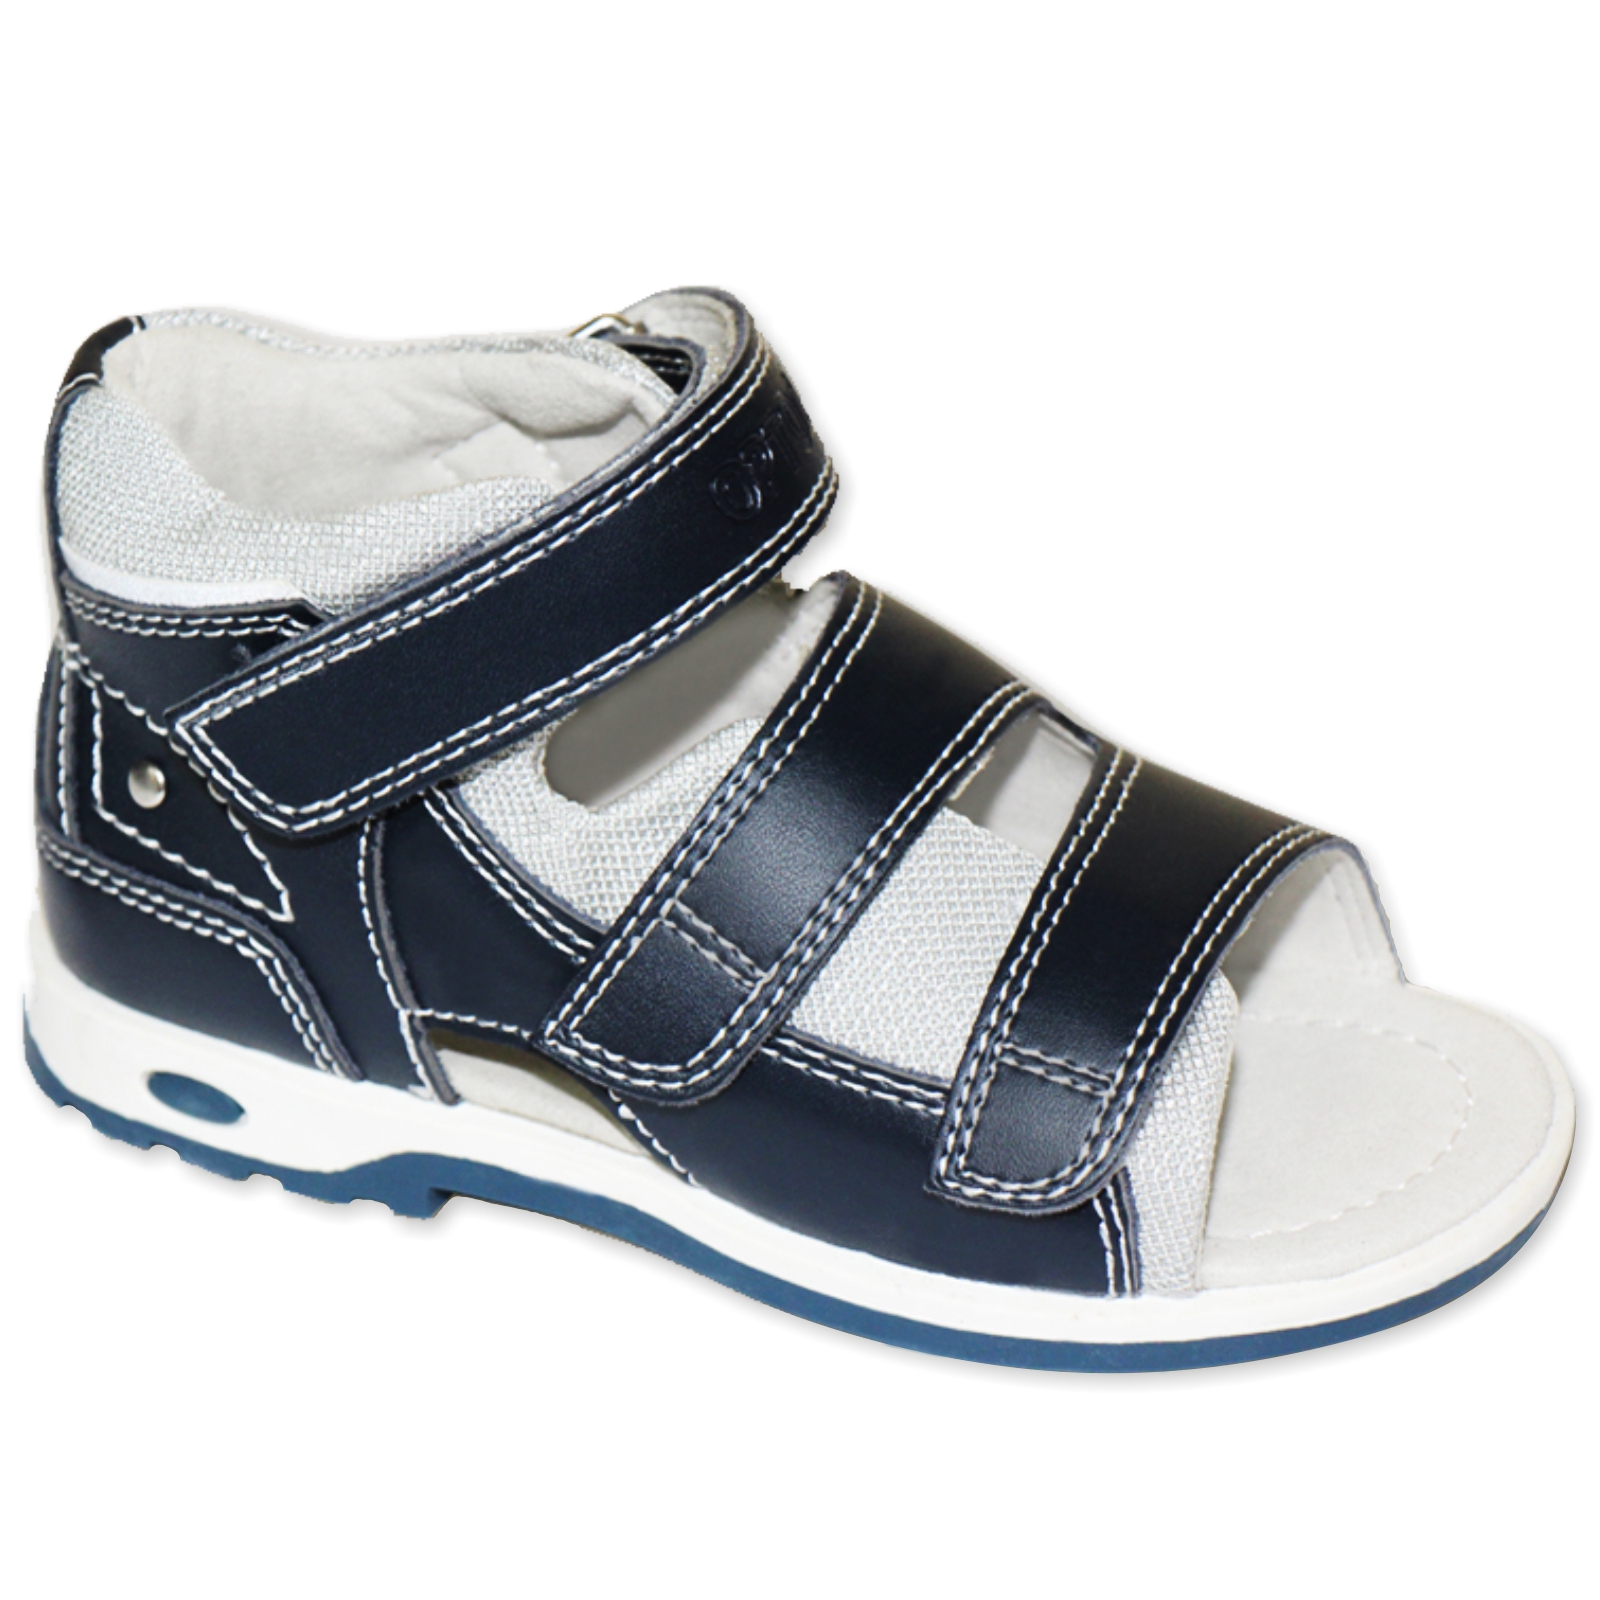 Как пишется сандаль. Сурсил Орто синие сандалии 35 размер. Totto Flex обувь для детей ортопедическая. Тотто 057. 4006-3 33 Ортодон.